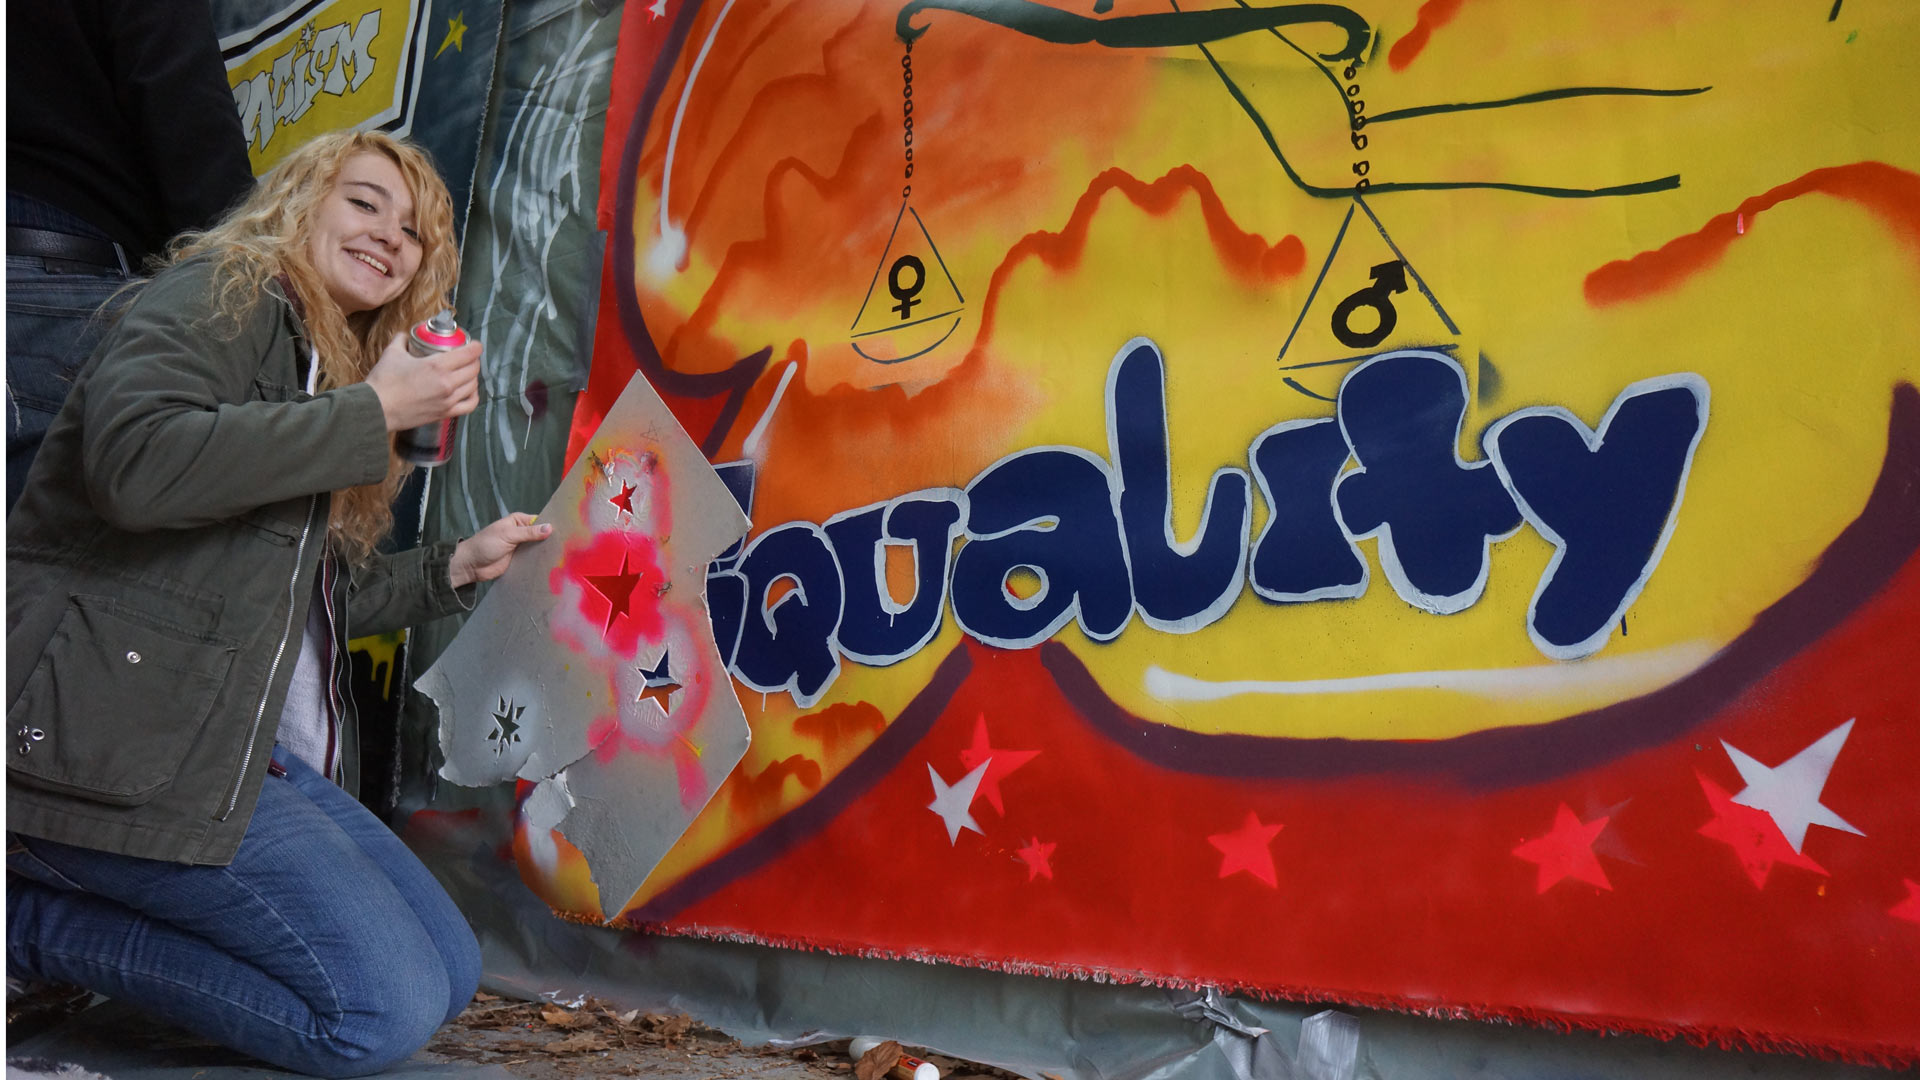 Öffentlichkeitsarbeit: Mit Graffiti Europa besser verstehen – Streetart bridges Europe (2013 – 2015)